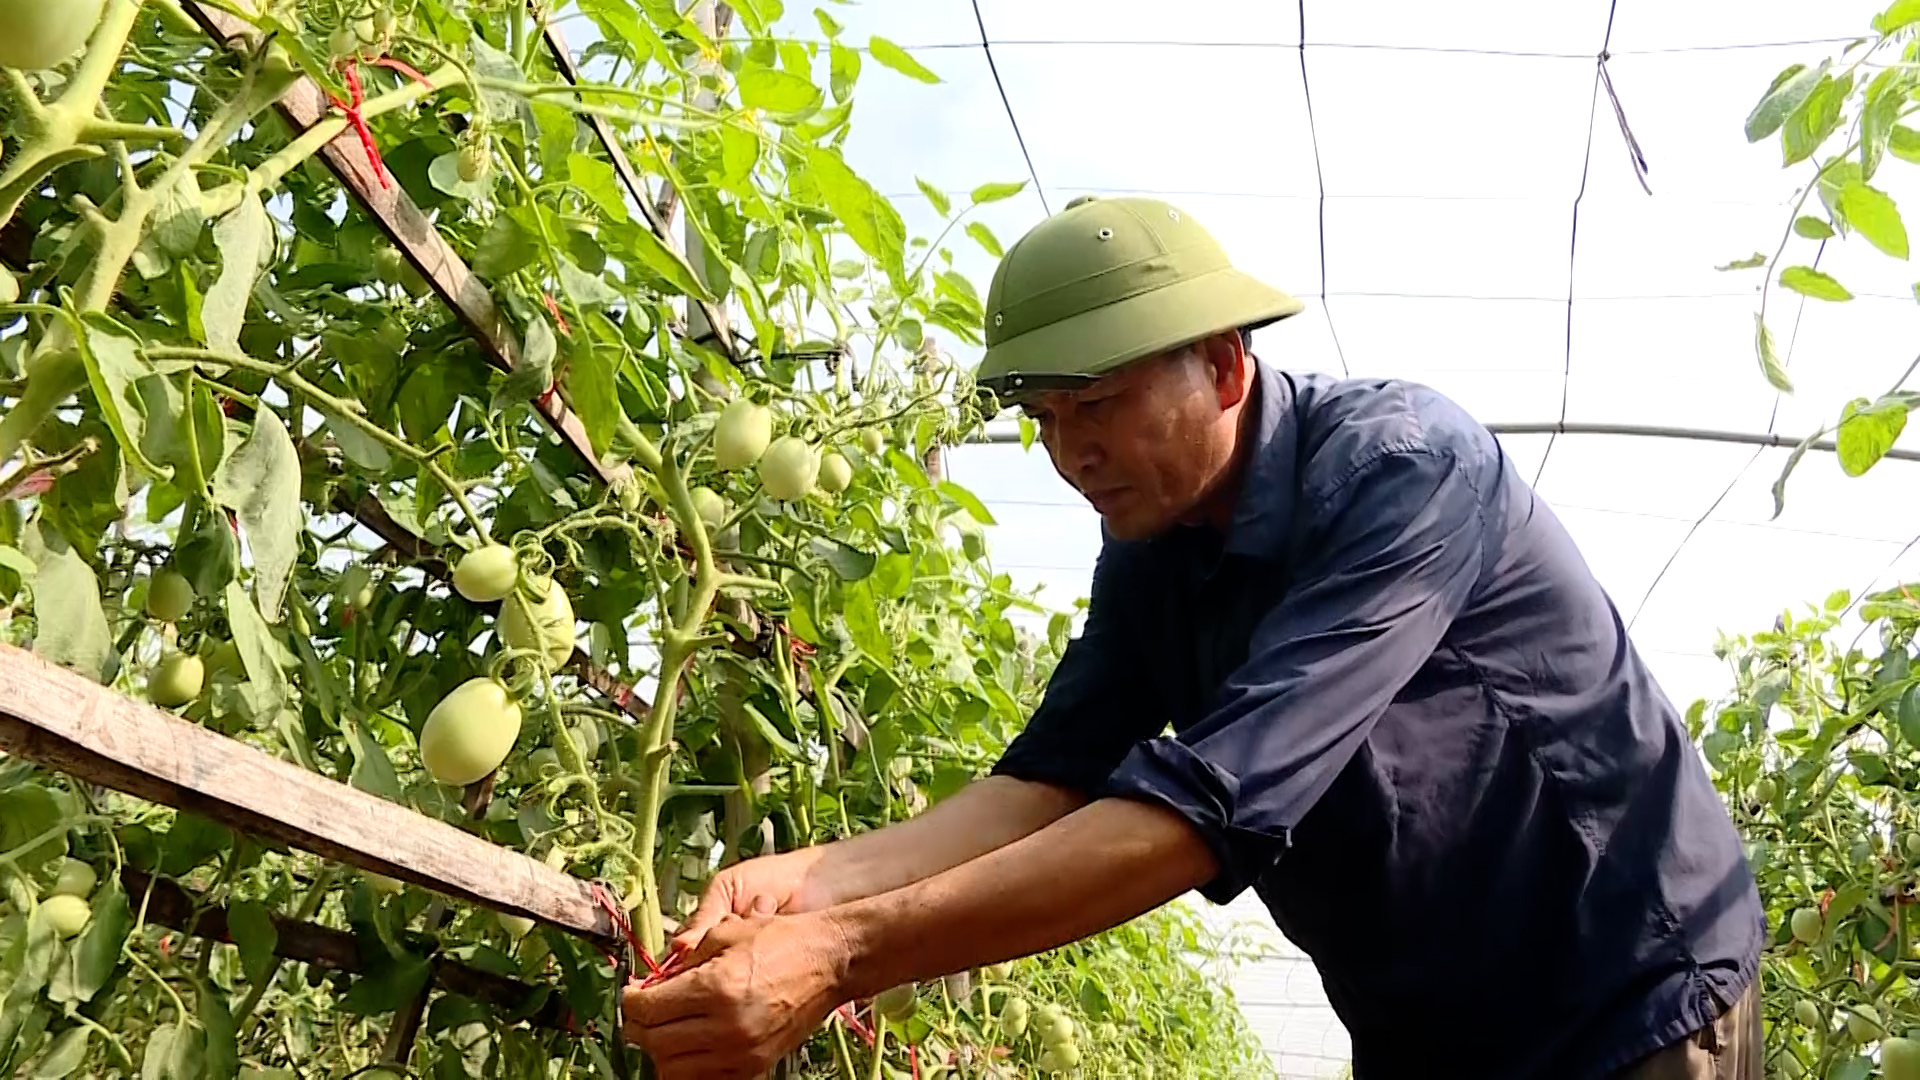 Hiệu quả chuyển đổi cơ cấu cây trồng ở Khánh Thành